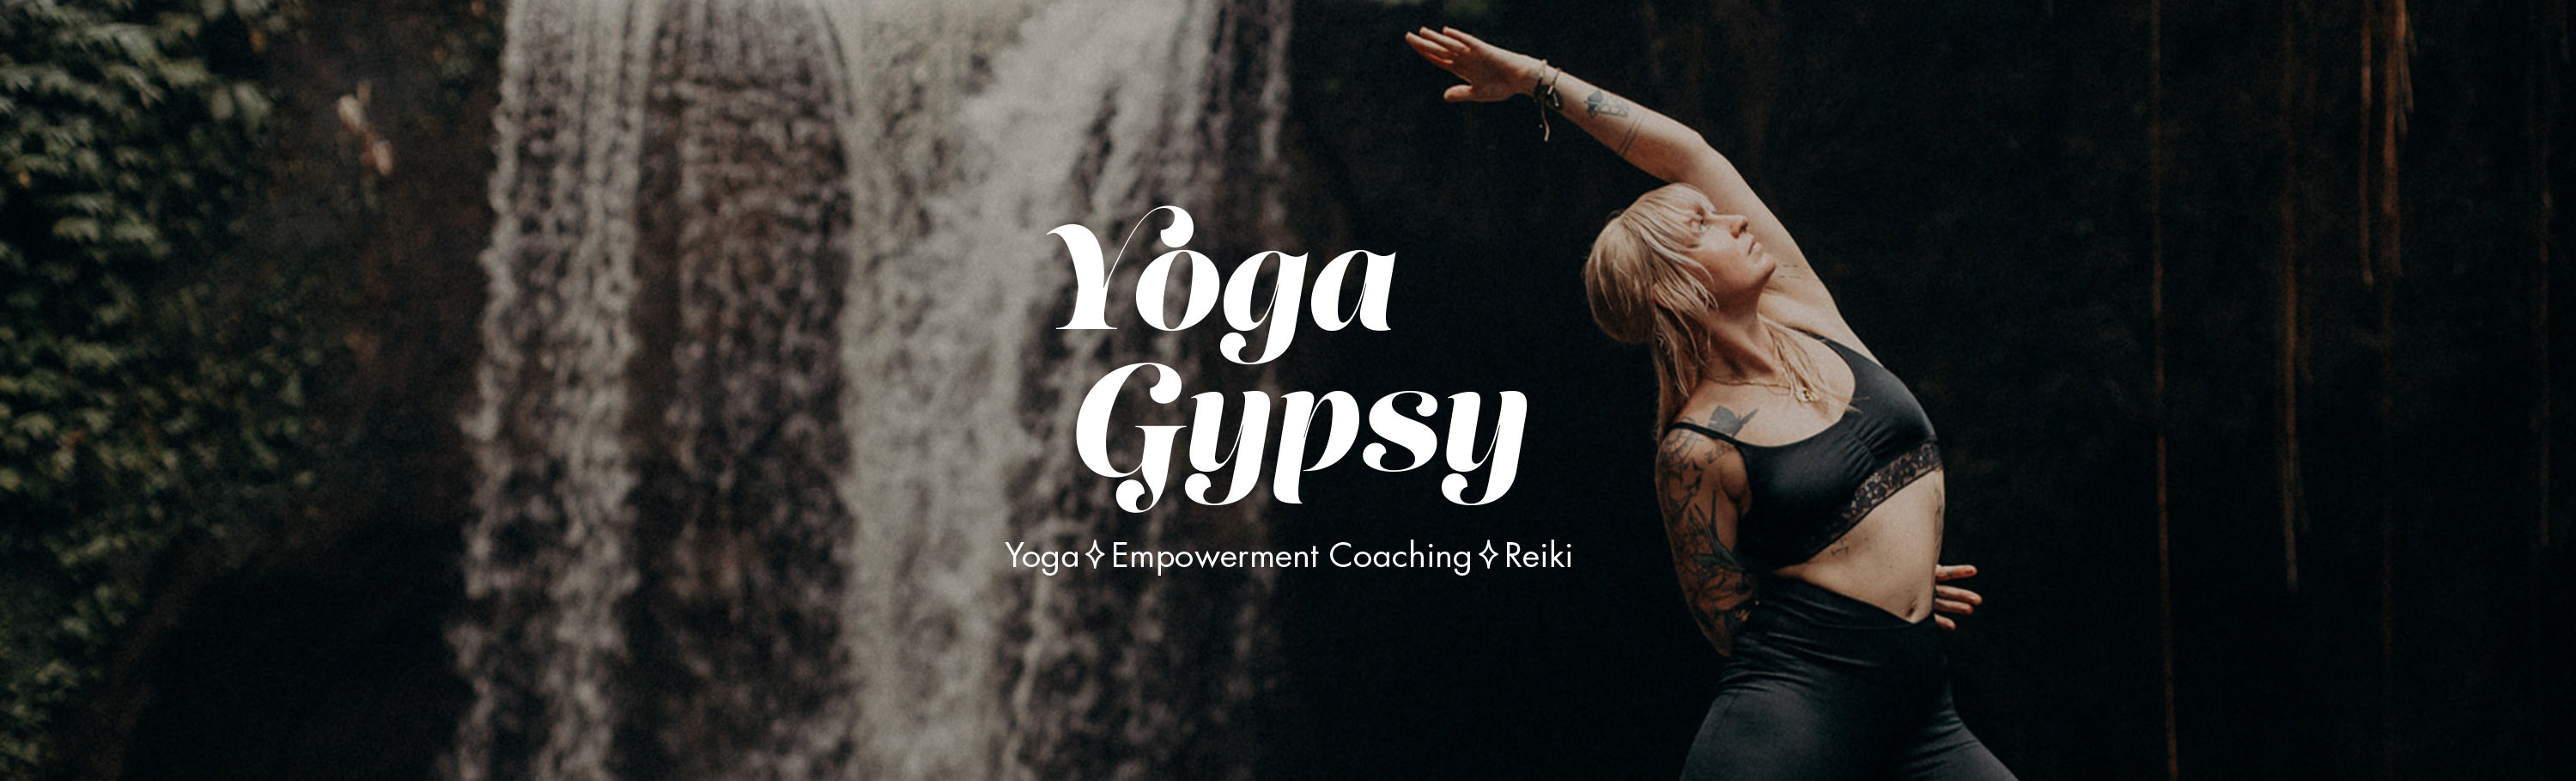 Yoga Gypsy